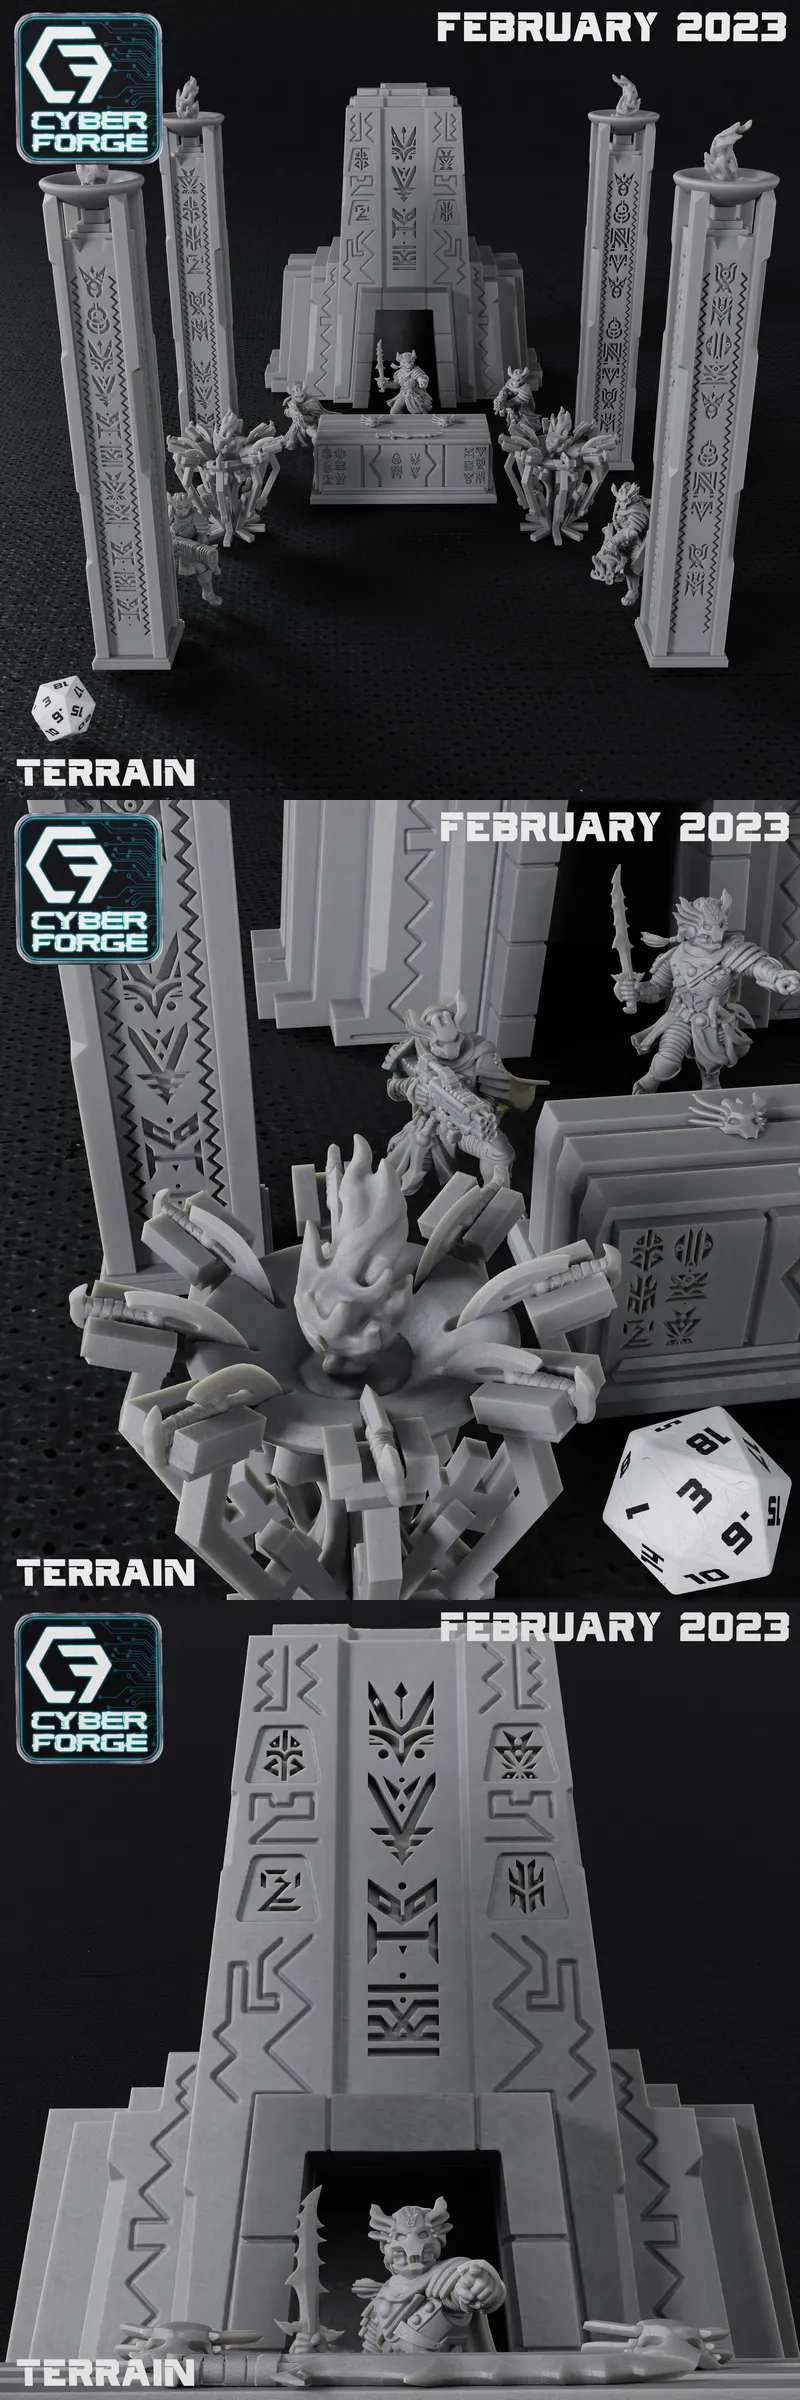 Cyber Forge - Terrain